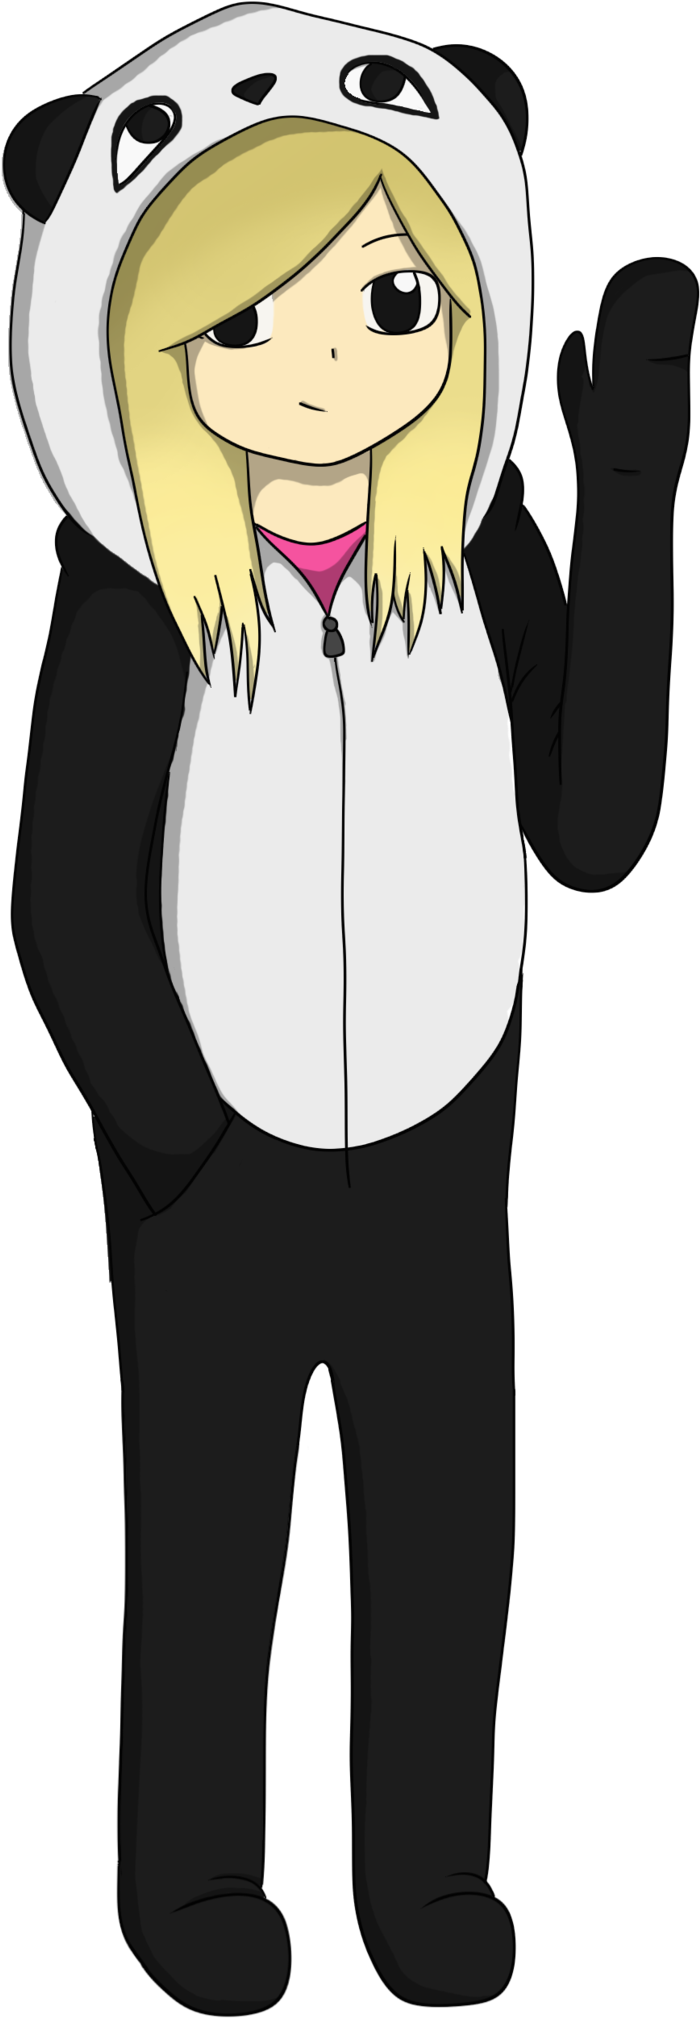 Onesie Girl Drawing - Chibi Girl In A Panda Onesie (1024x2190)